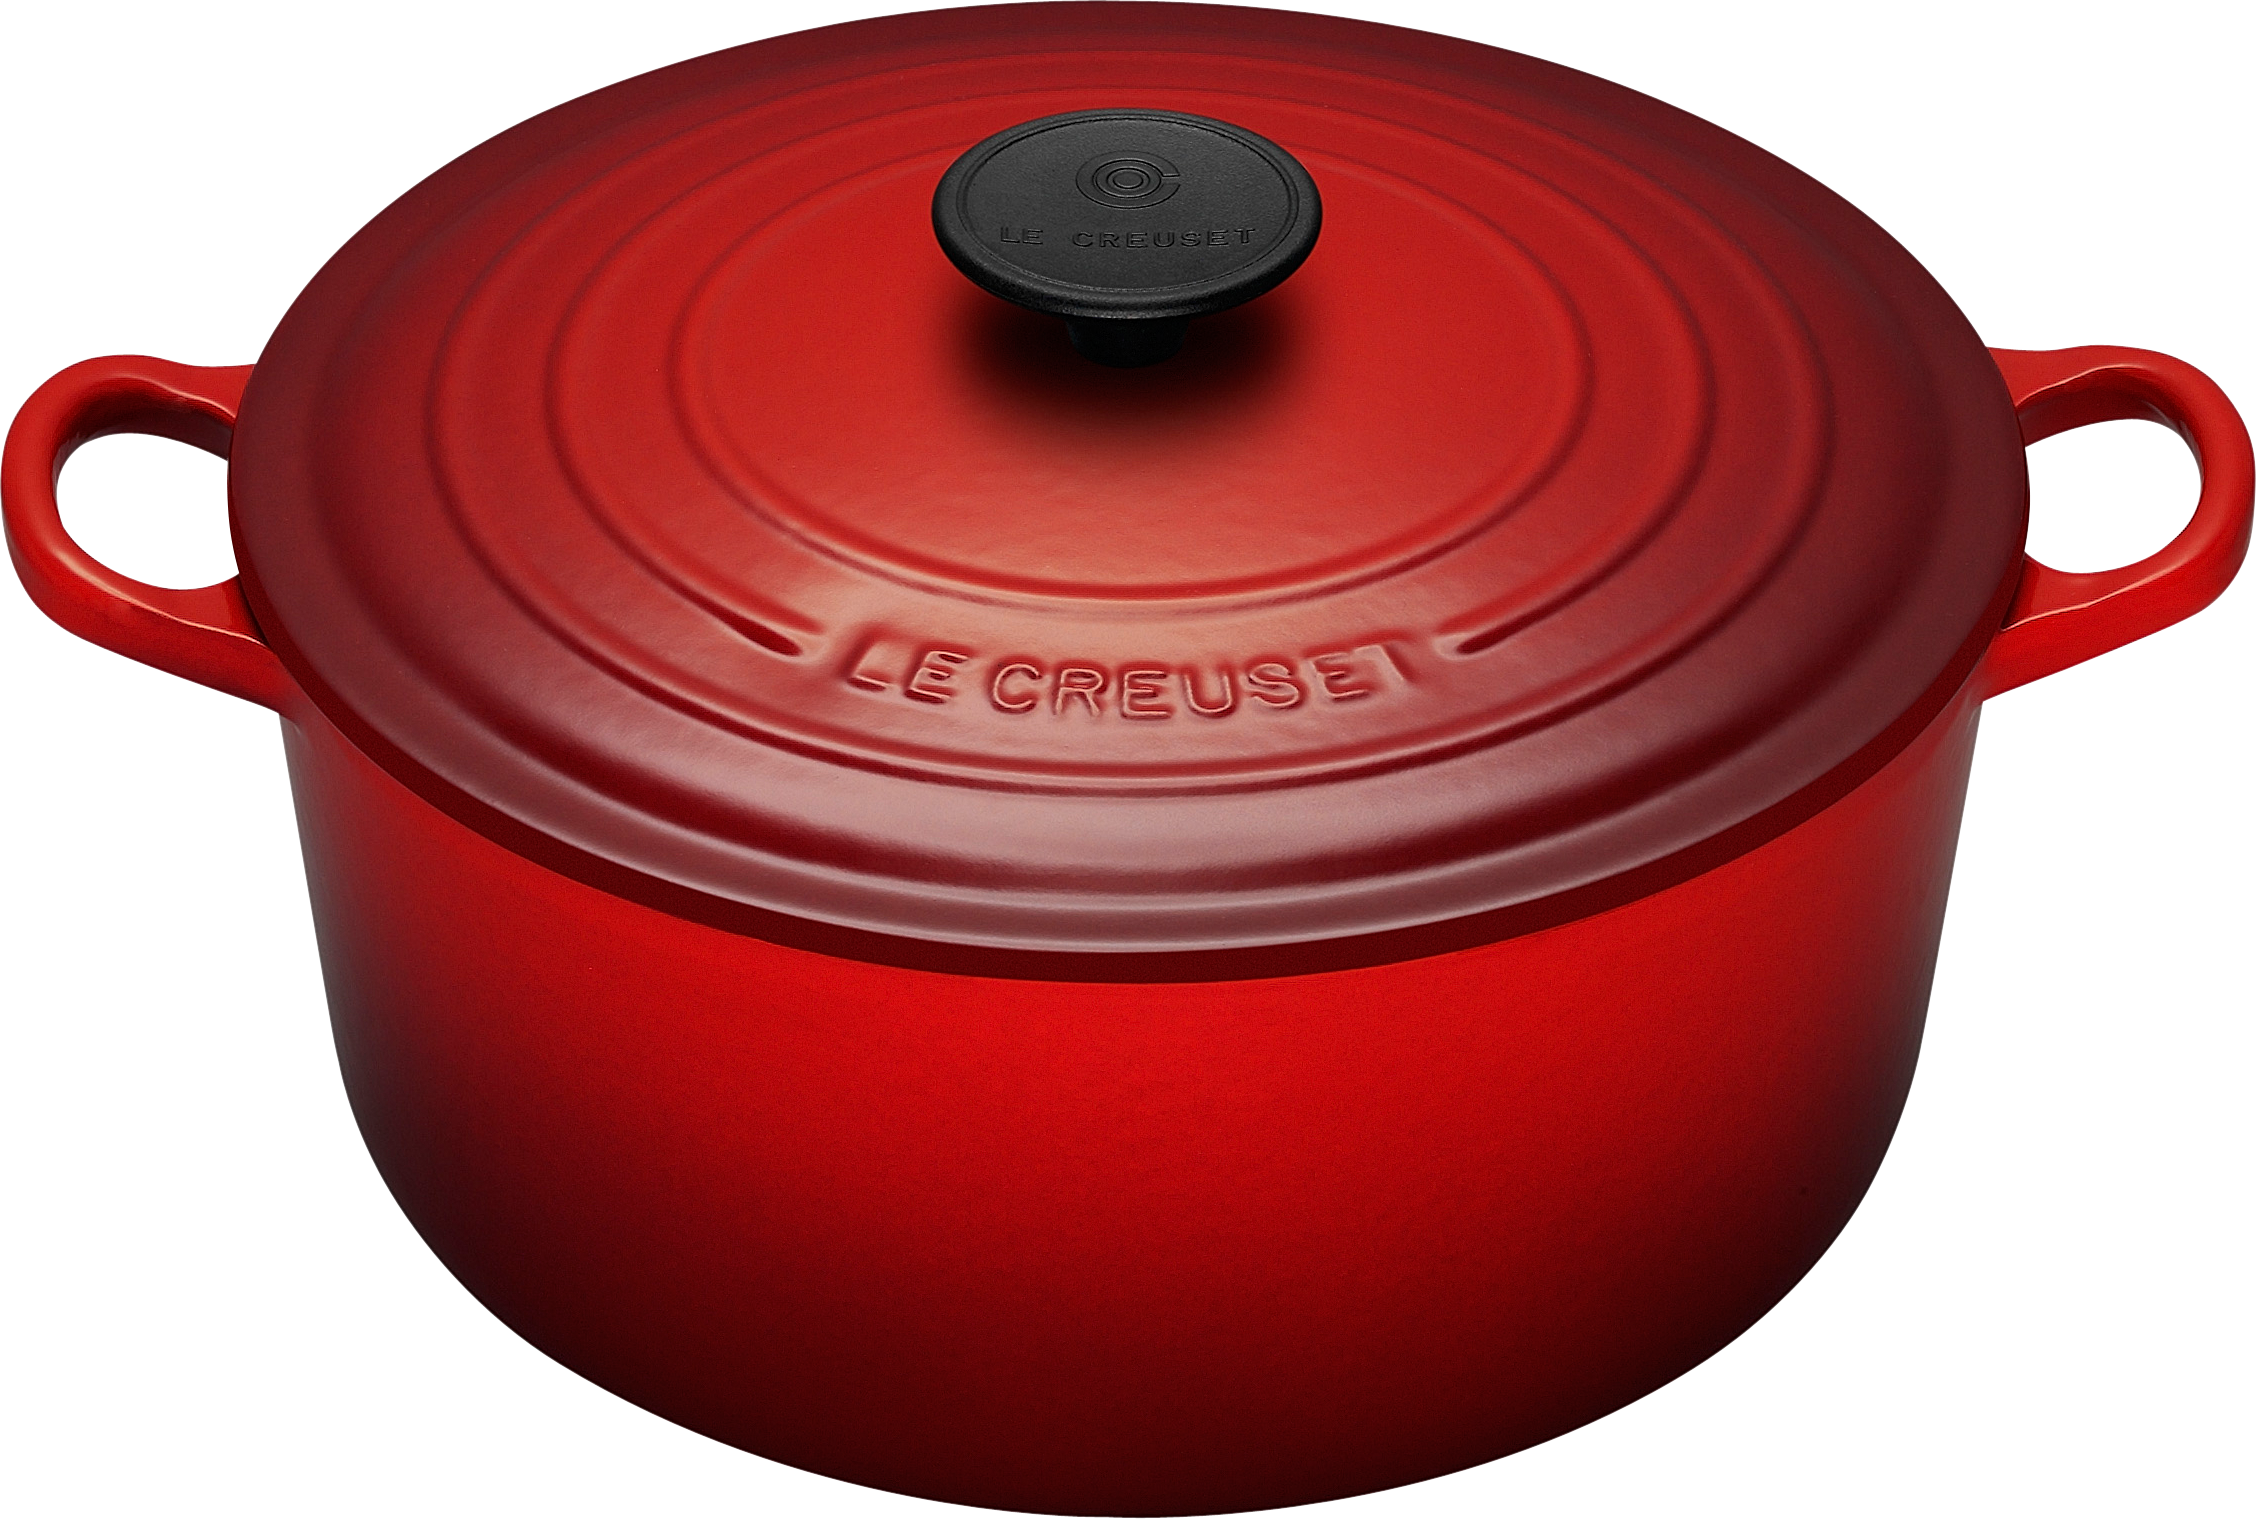 赤い土鍋